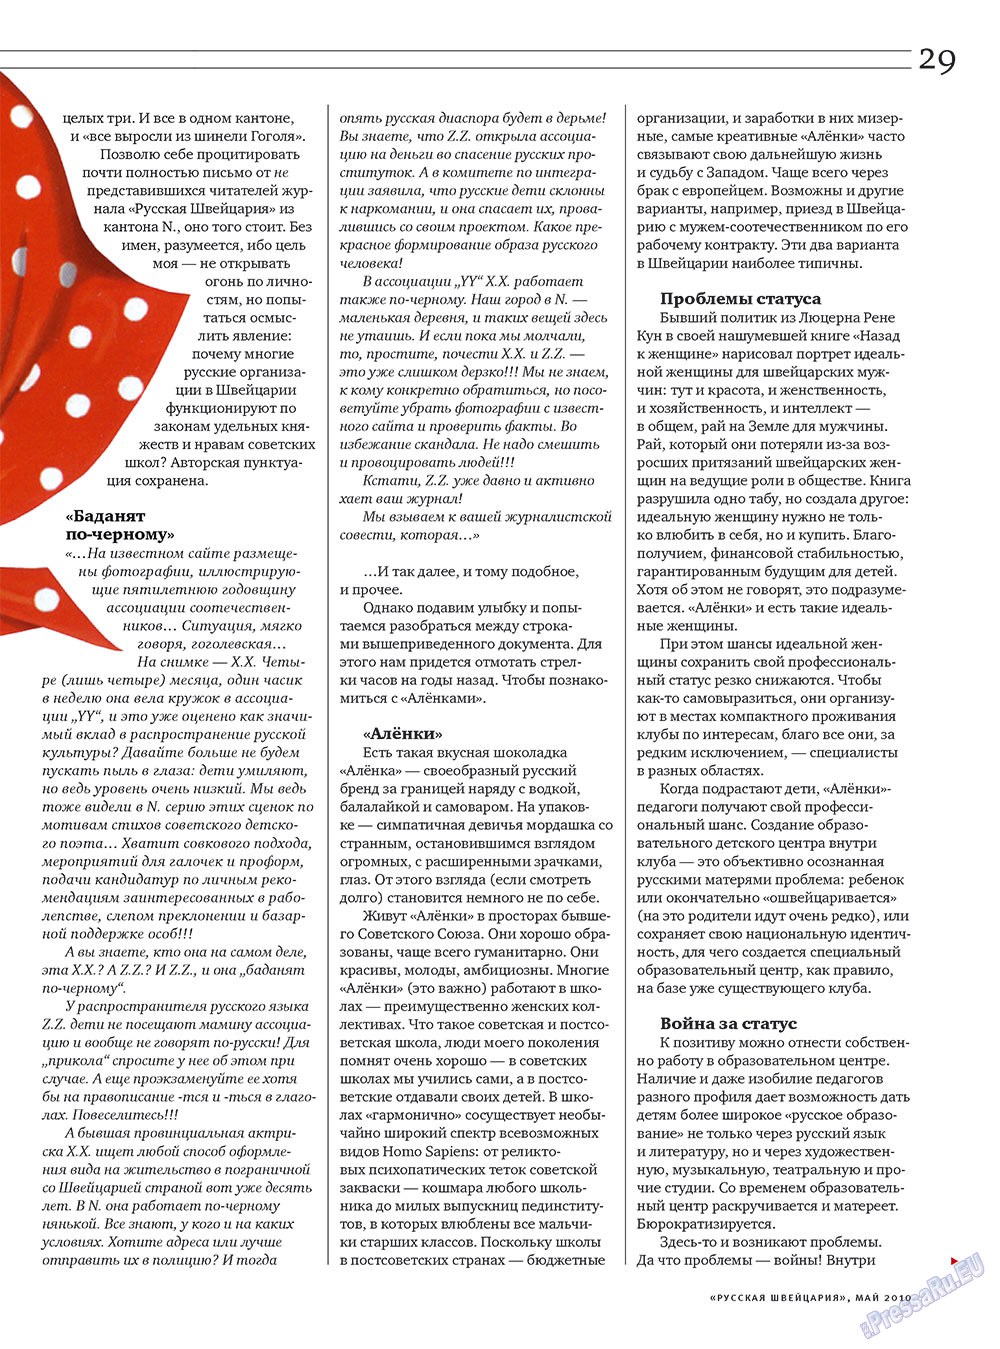 Русская Швейцария, журнал. 2010 №4 стр.29